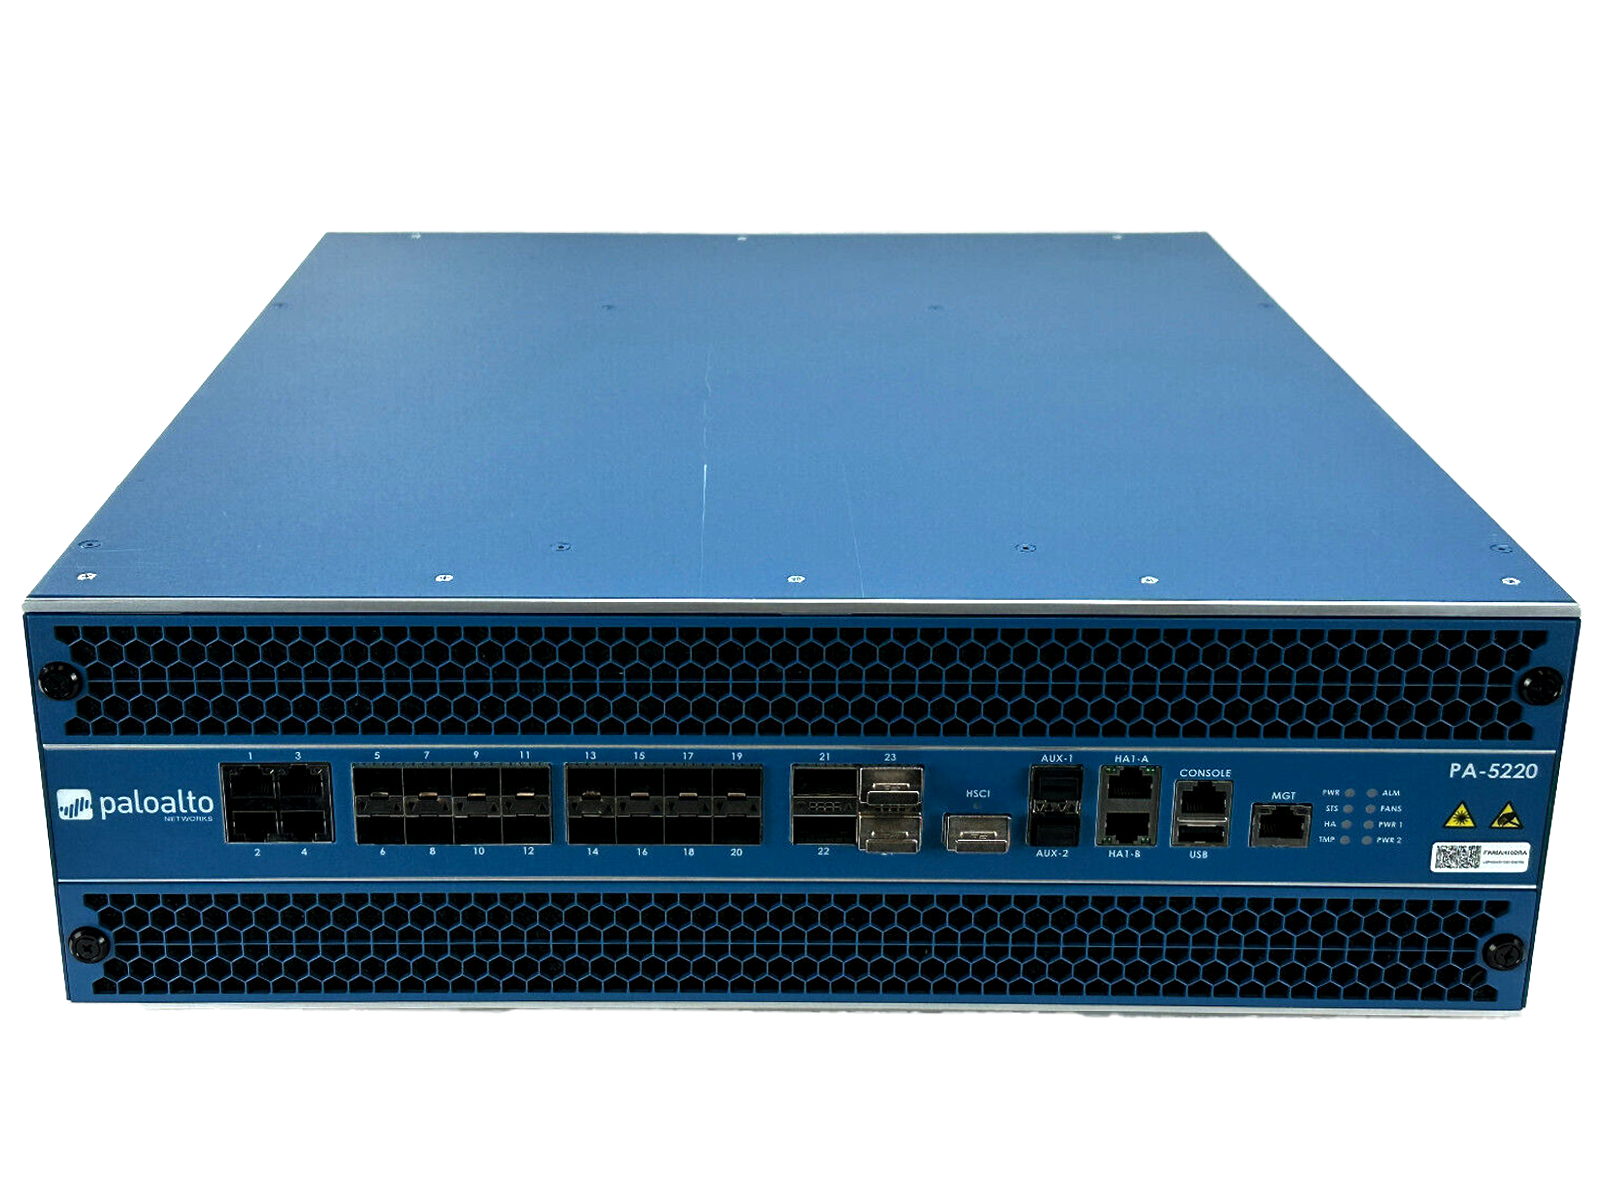 Palo Alto PA-5220 Next-Generation Firewall VPN Gateway 1/10/40GbE 2x PSU Rails PAN-PA-5220-DC.